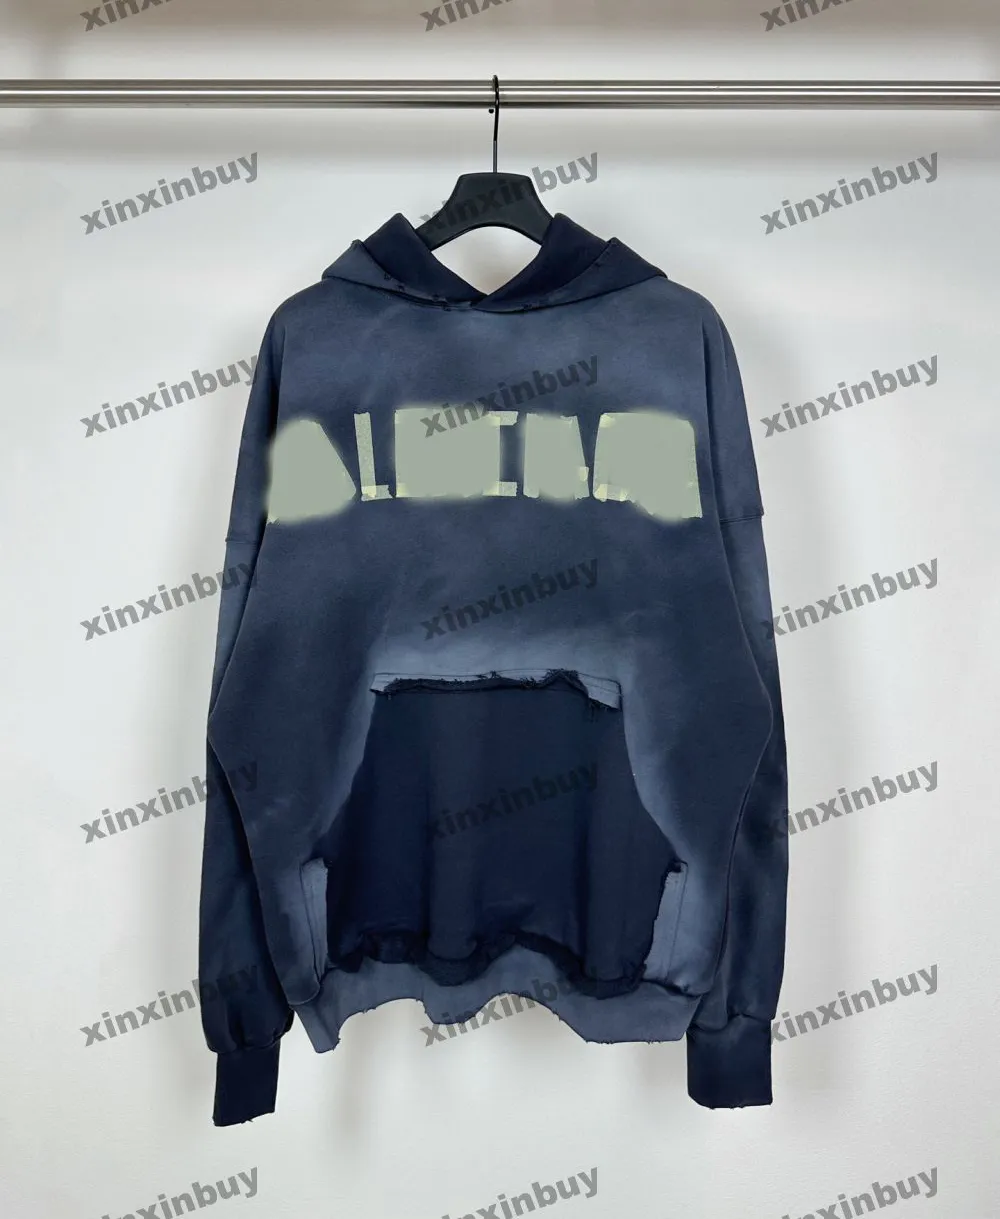 xinxinbuy Felpa con cappuccio da uomo donna firmata Felpa con cappuccio con stampa di lettere sfumate maglione tasca distrutta grigio blu nero bianco XS-2XL